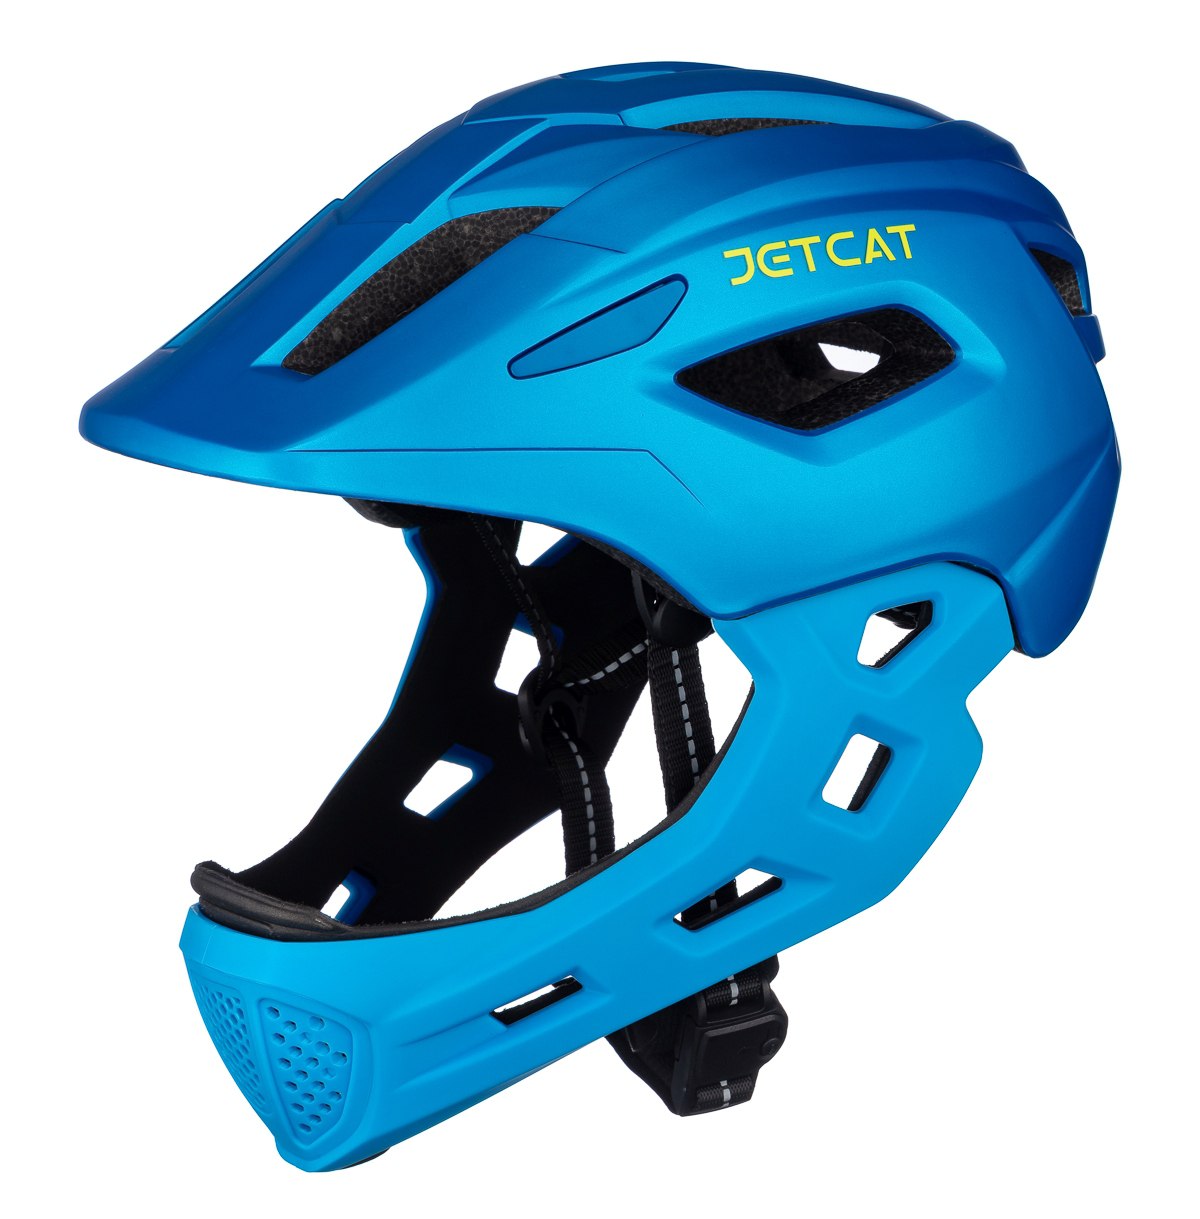 Шлем защитный детский JetCat Start Blue размер S 52-56 см велосипедный шлем защитный универсальный sportex jr f11721 1 голубой